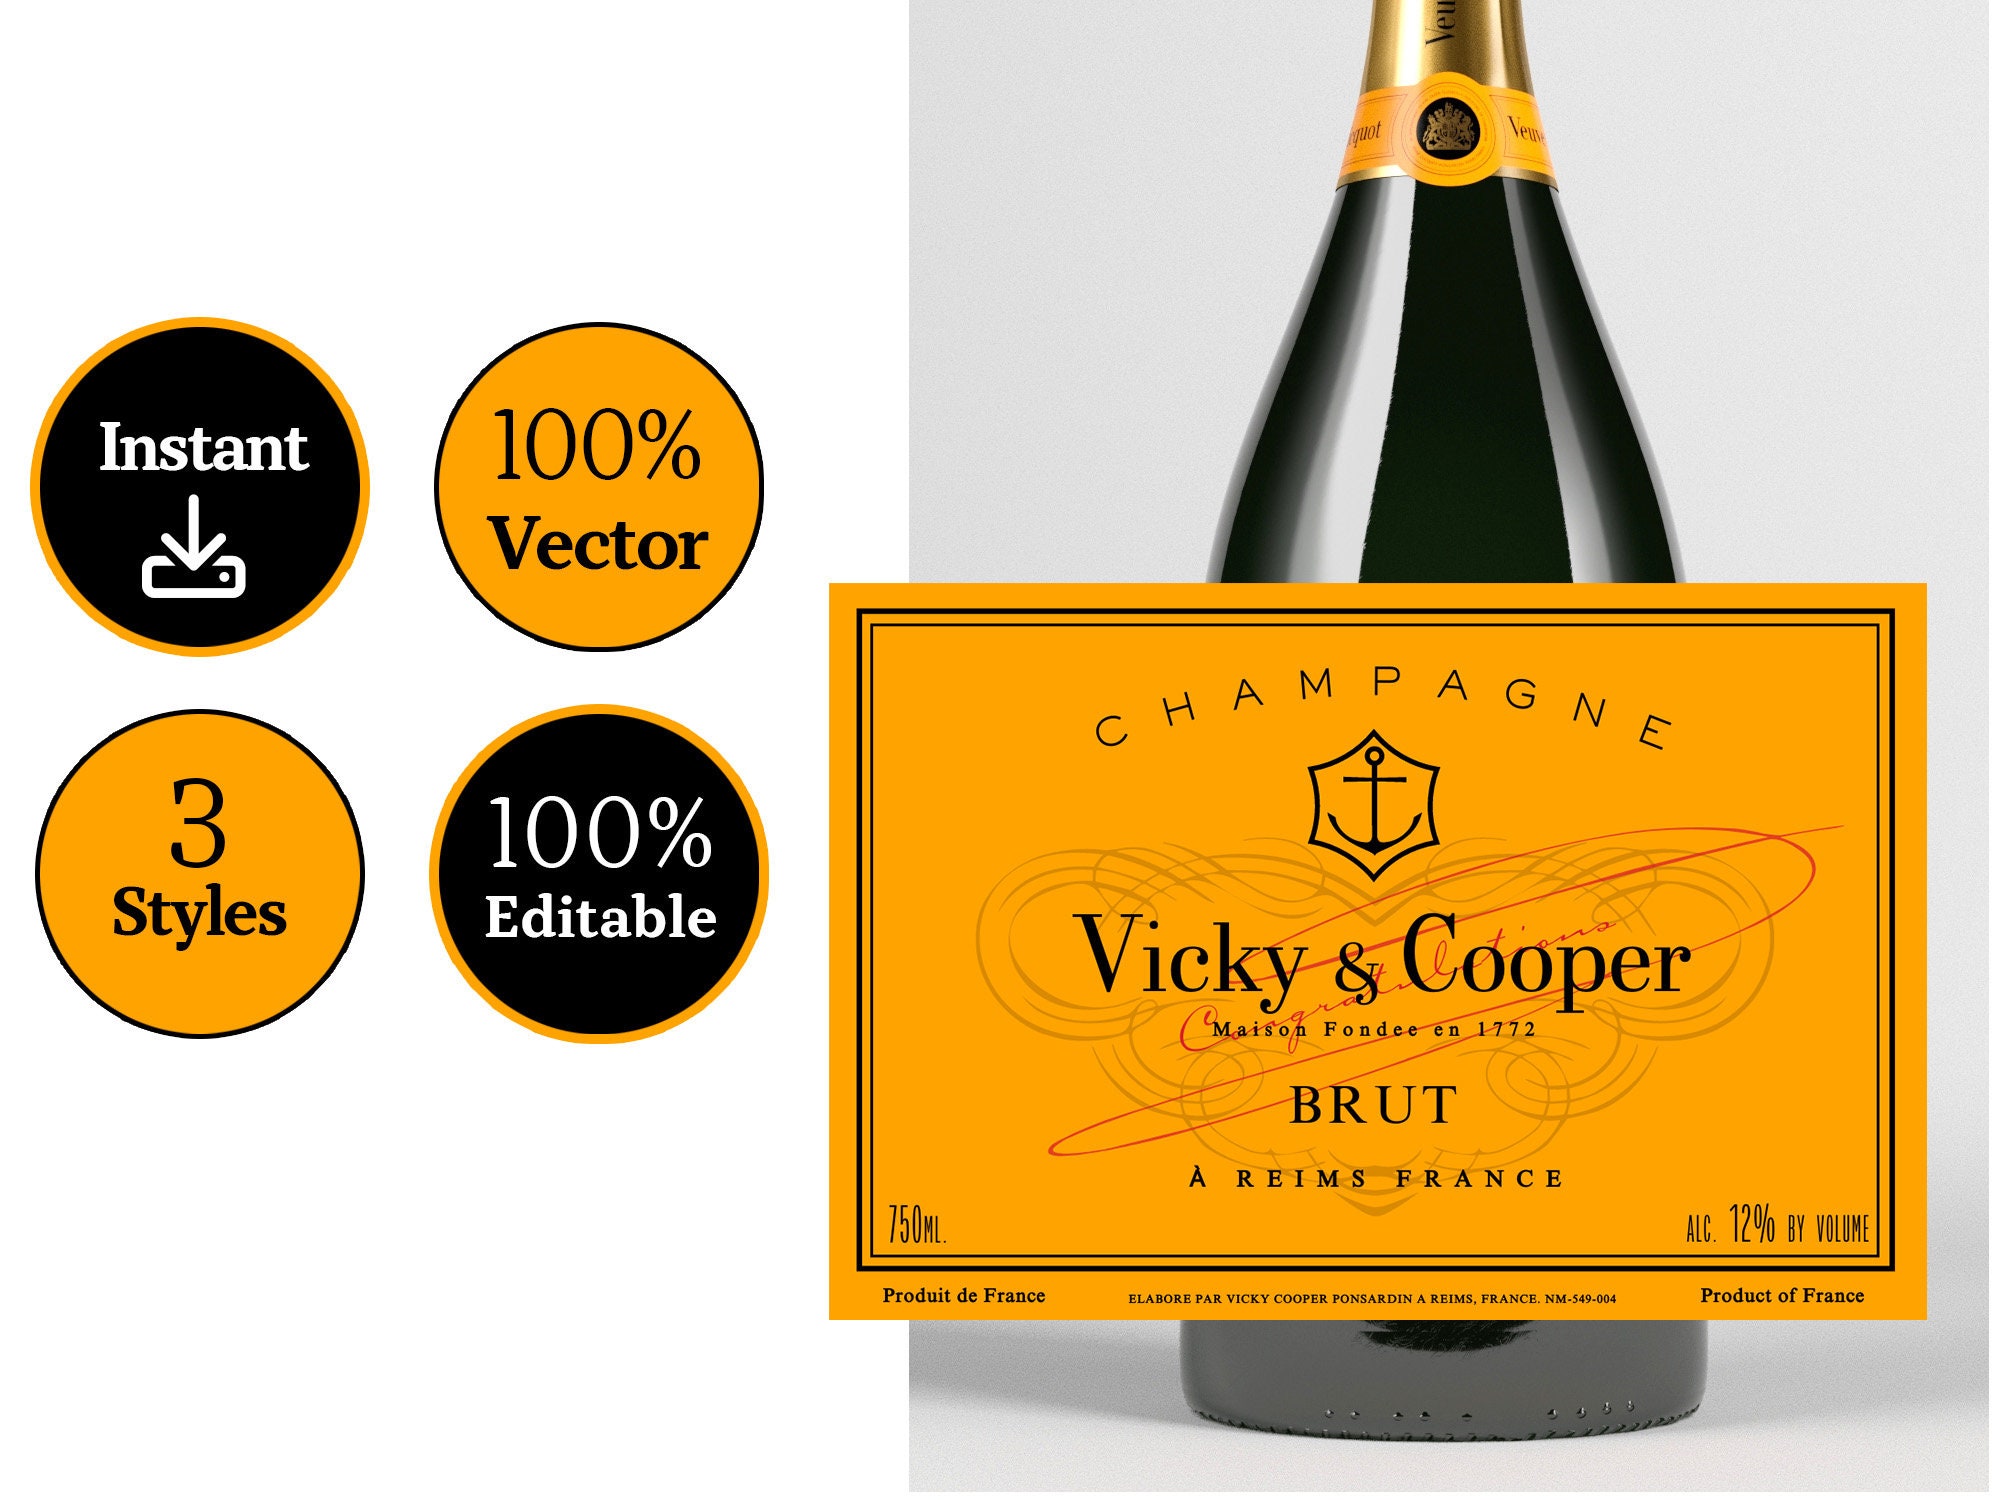 Veuve Clicquot Champagne Vector Logo - Download Free SVG Icon